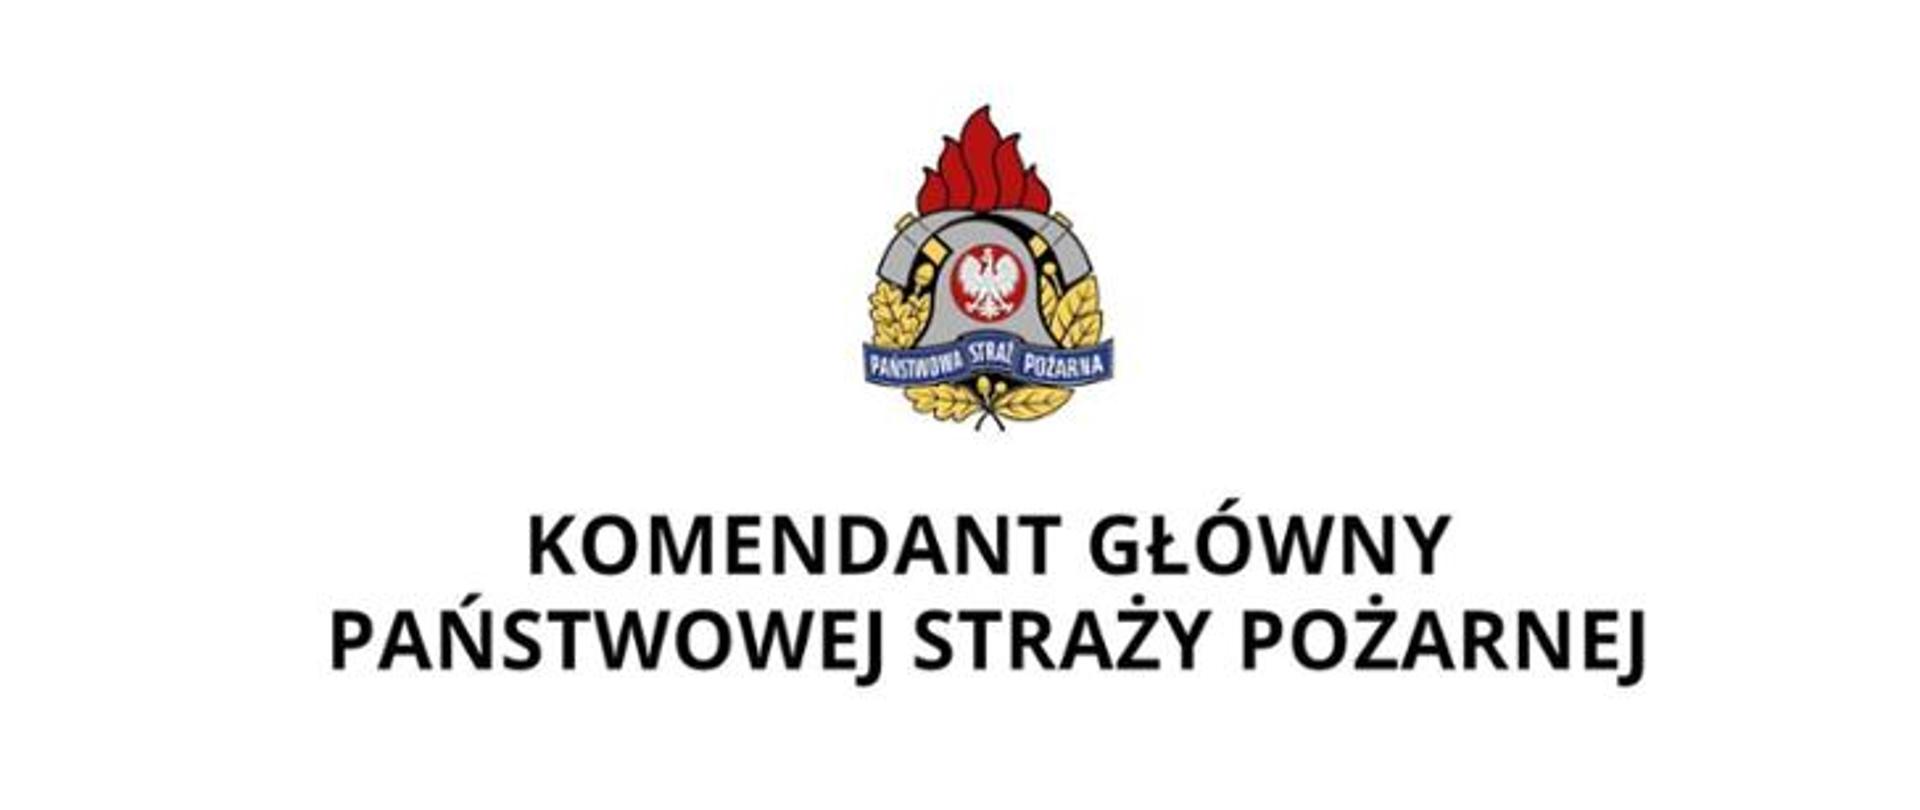 logo PSP oraz podpis Komendant Główny Państwowej Straży Pożarnej